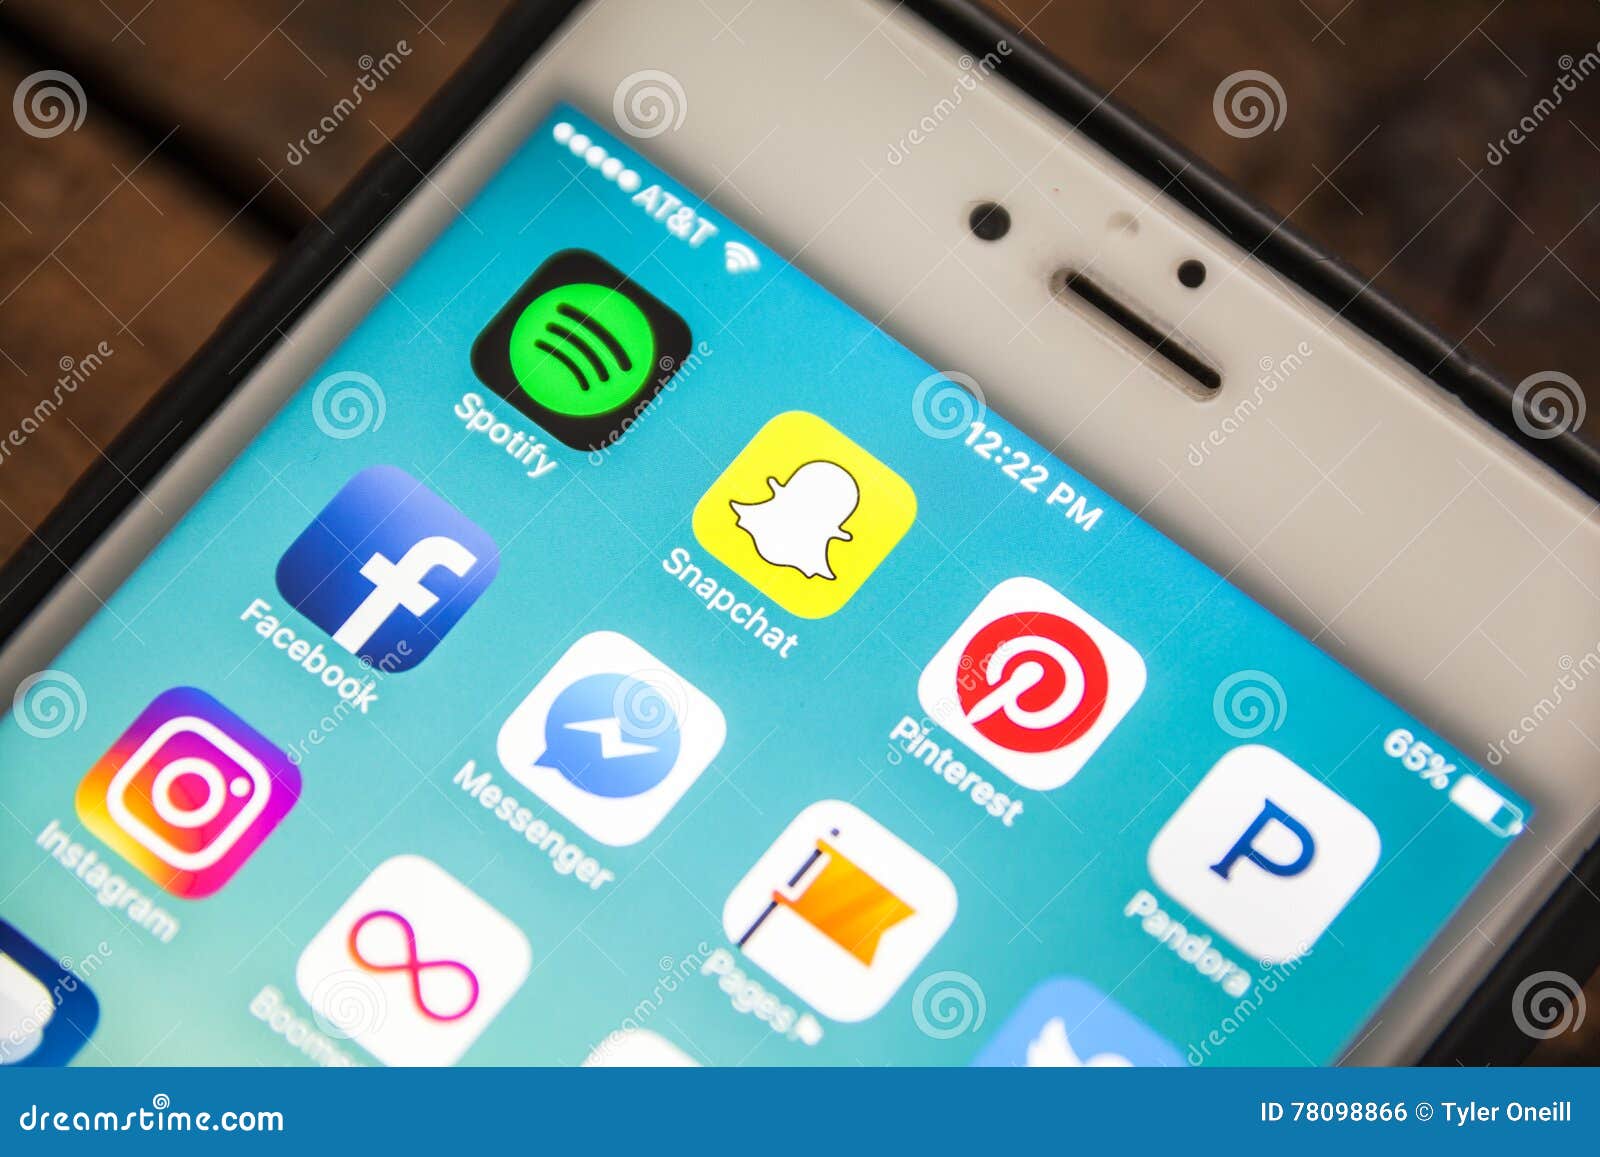 Snapchat app for macbook